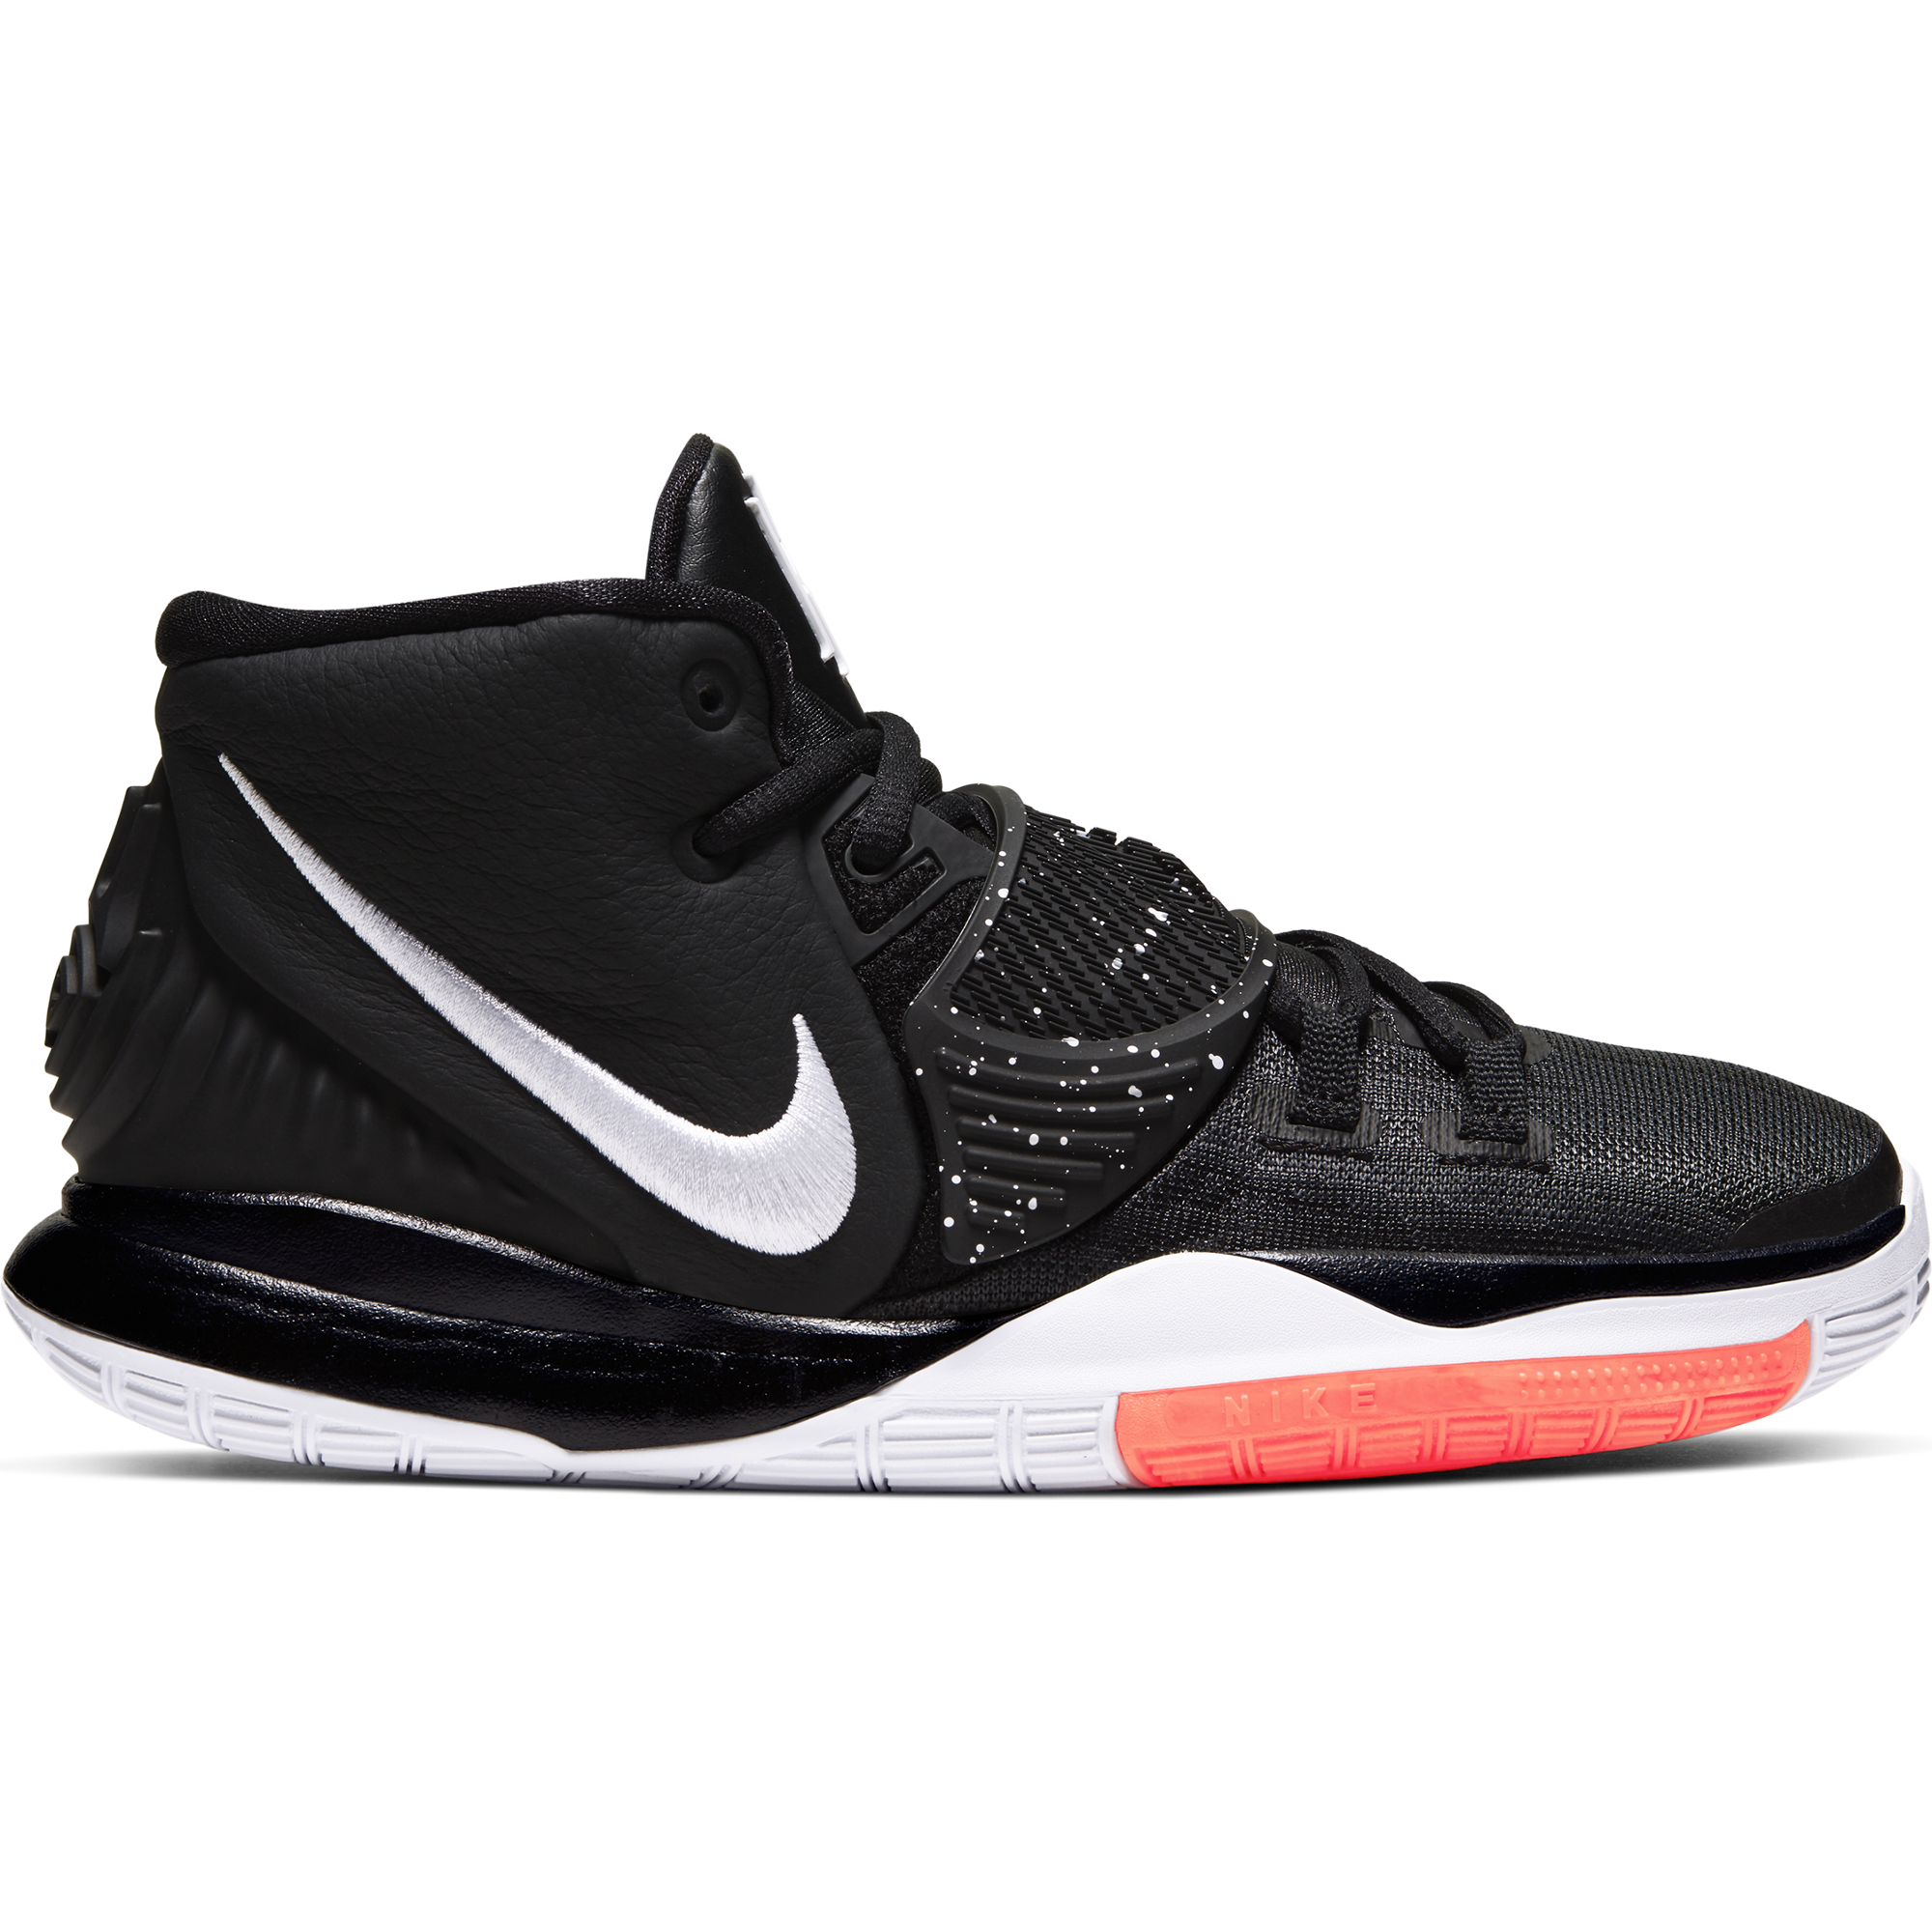 Kyrie 6 'Asia Irving' Basketball Shoe. Nike HU